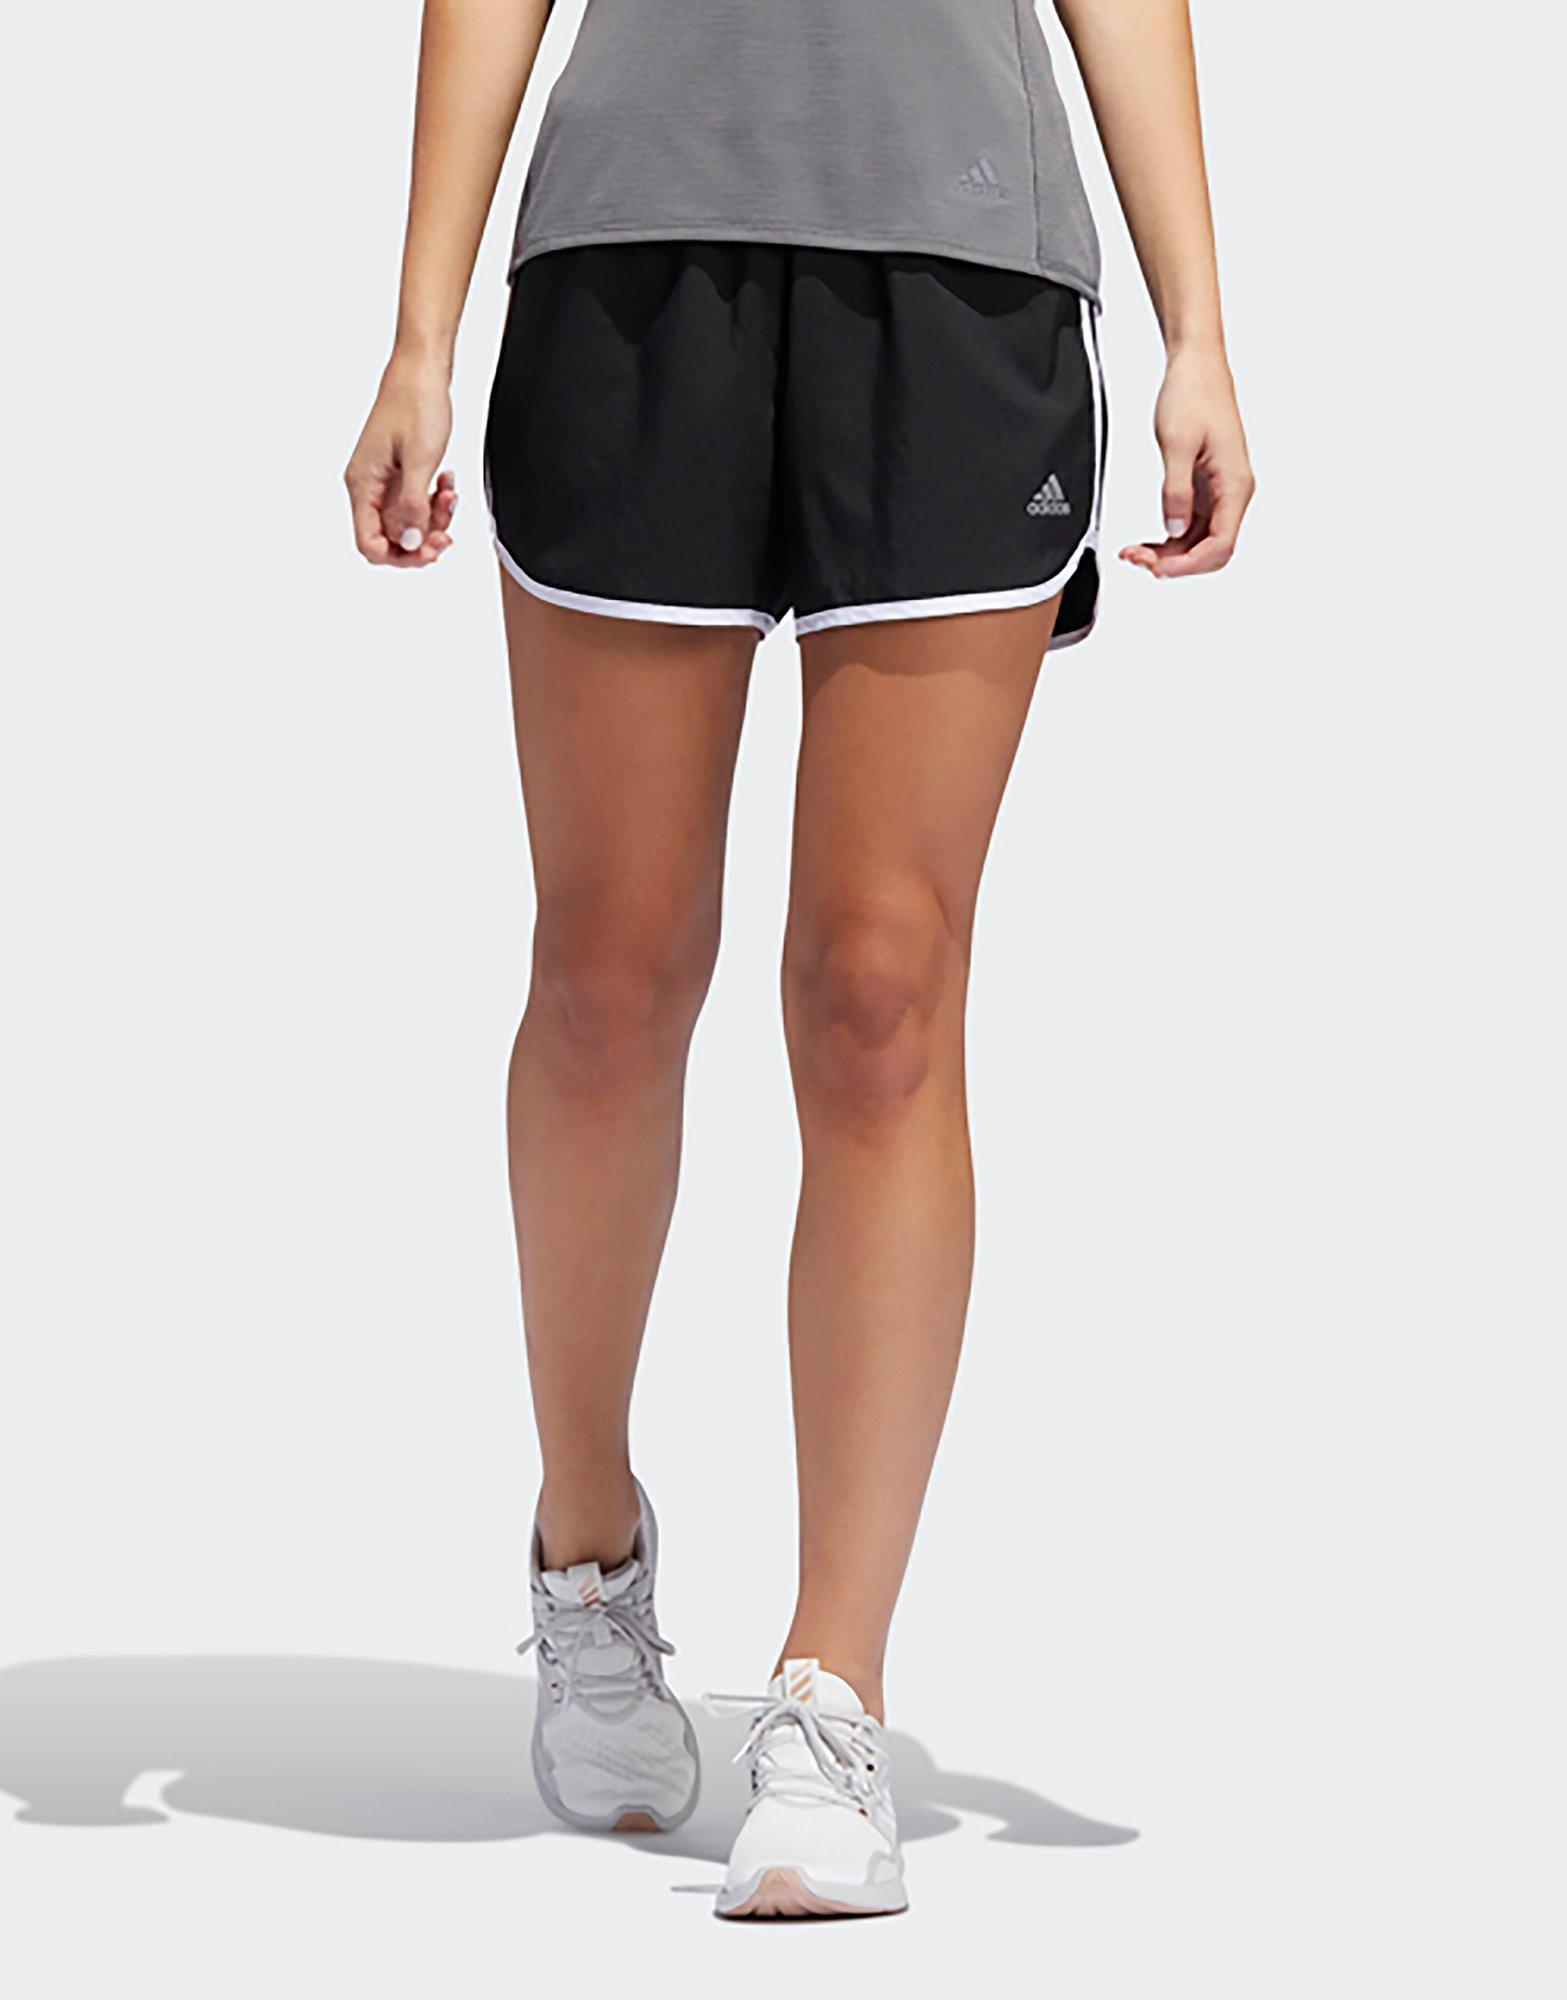 adidas marathon shorts